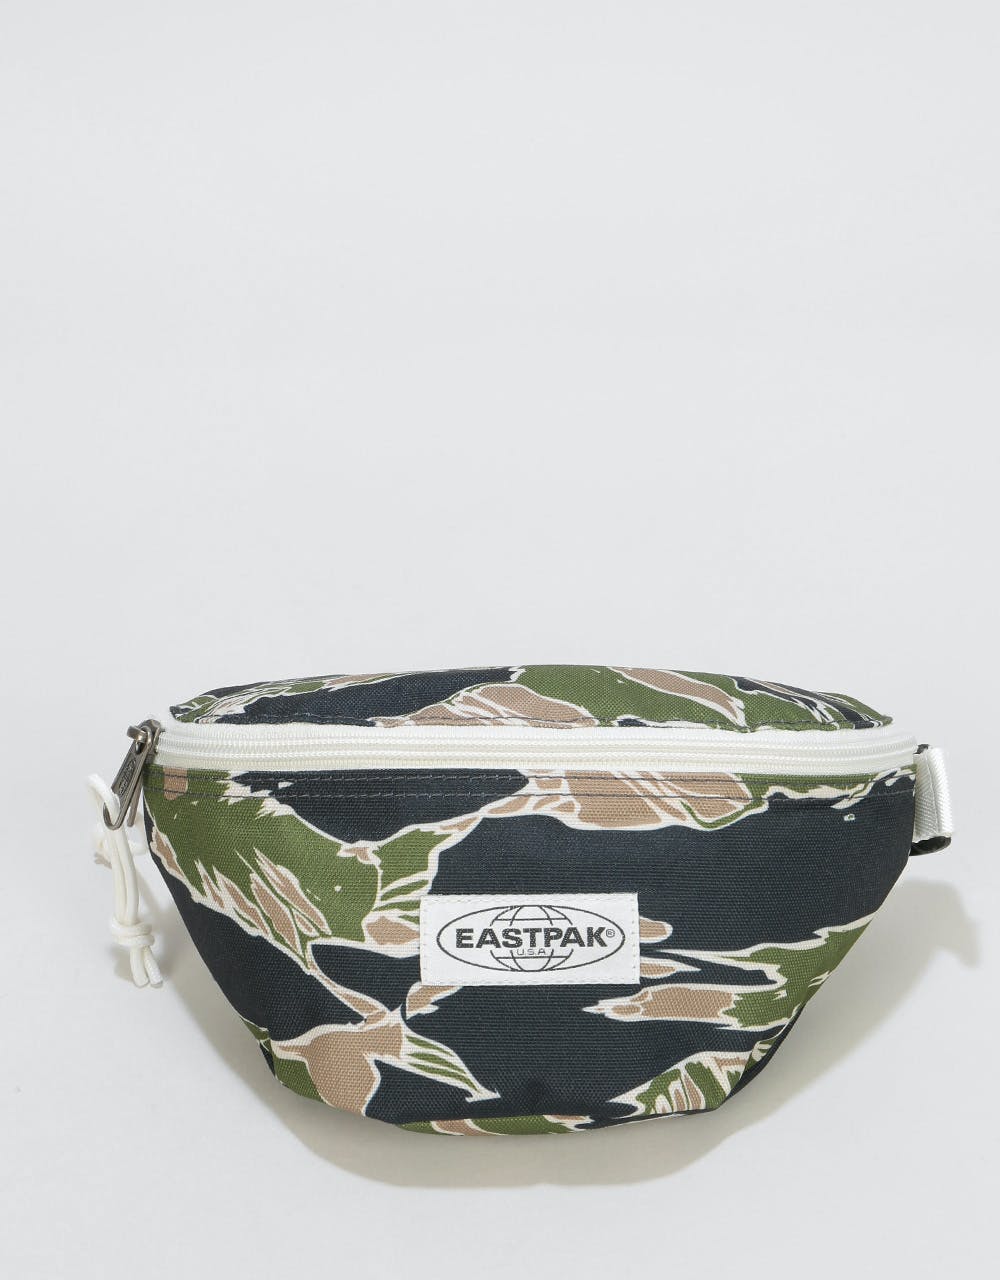 Eastpak Springer Cross Body Bag - Camo'Ed Forest